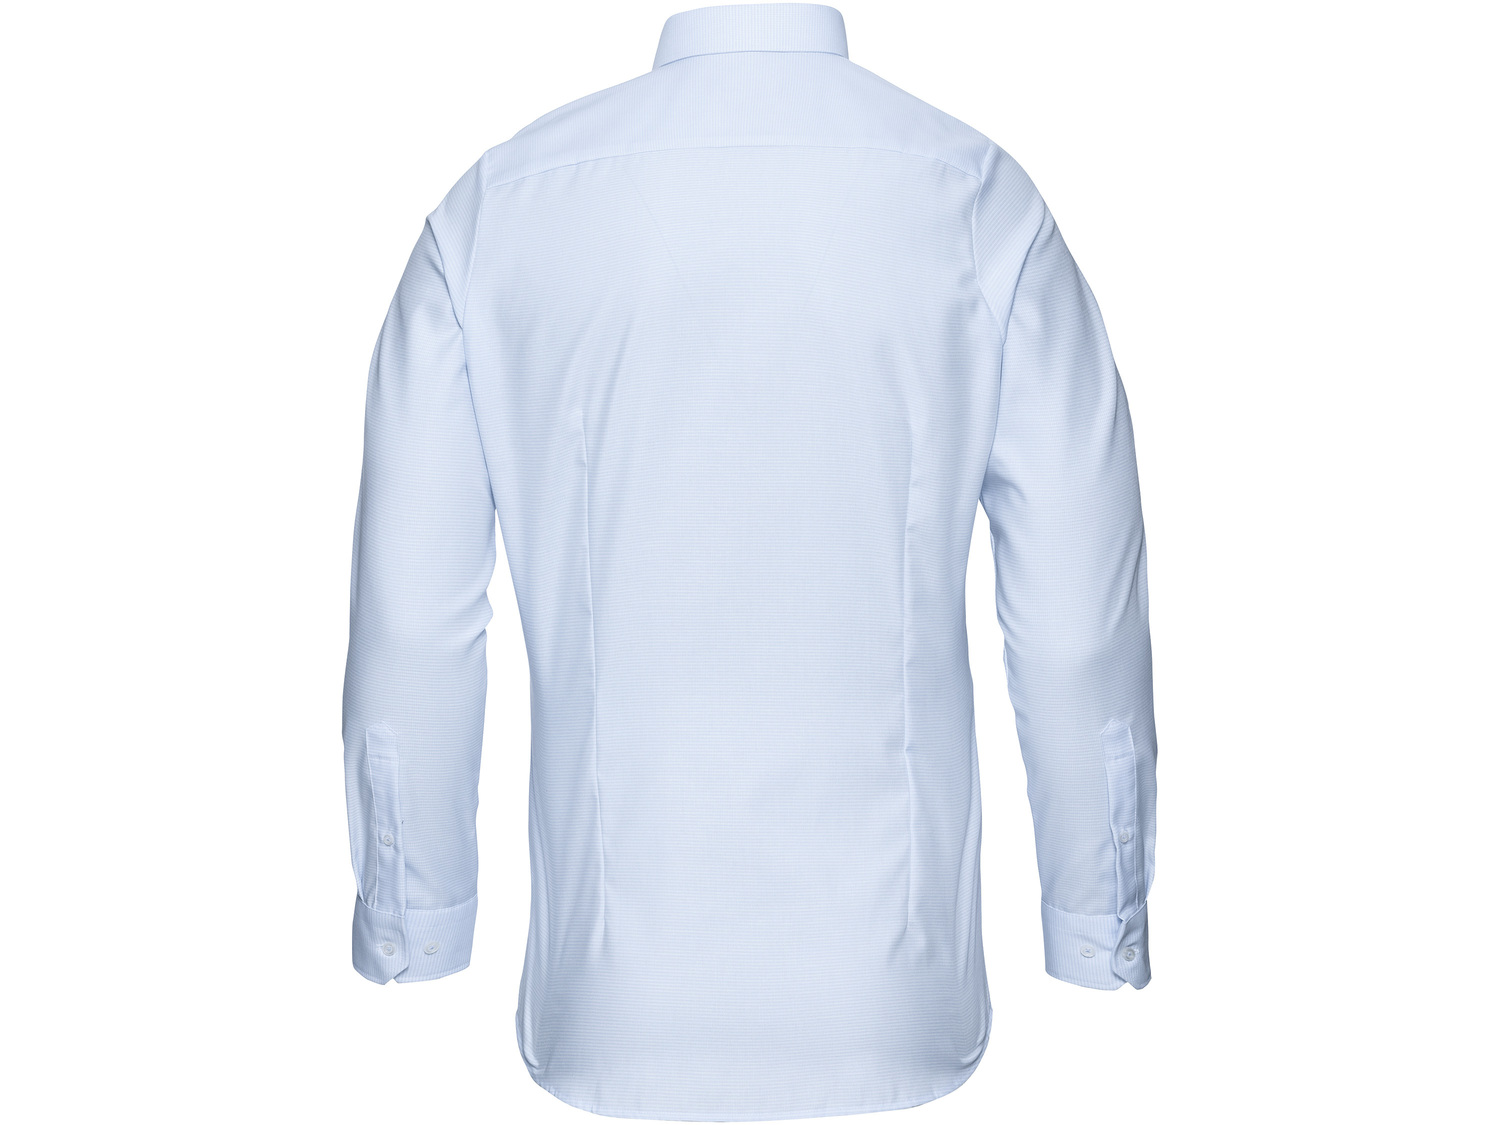 Koszula , cena 49,99 PLN 
- 100% bawełny
- kołnierz włoski
- bez prasowania: ...